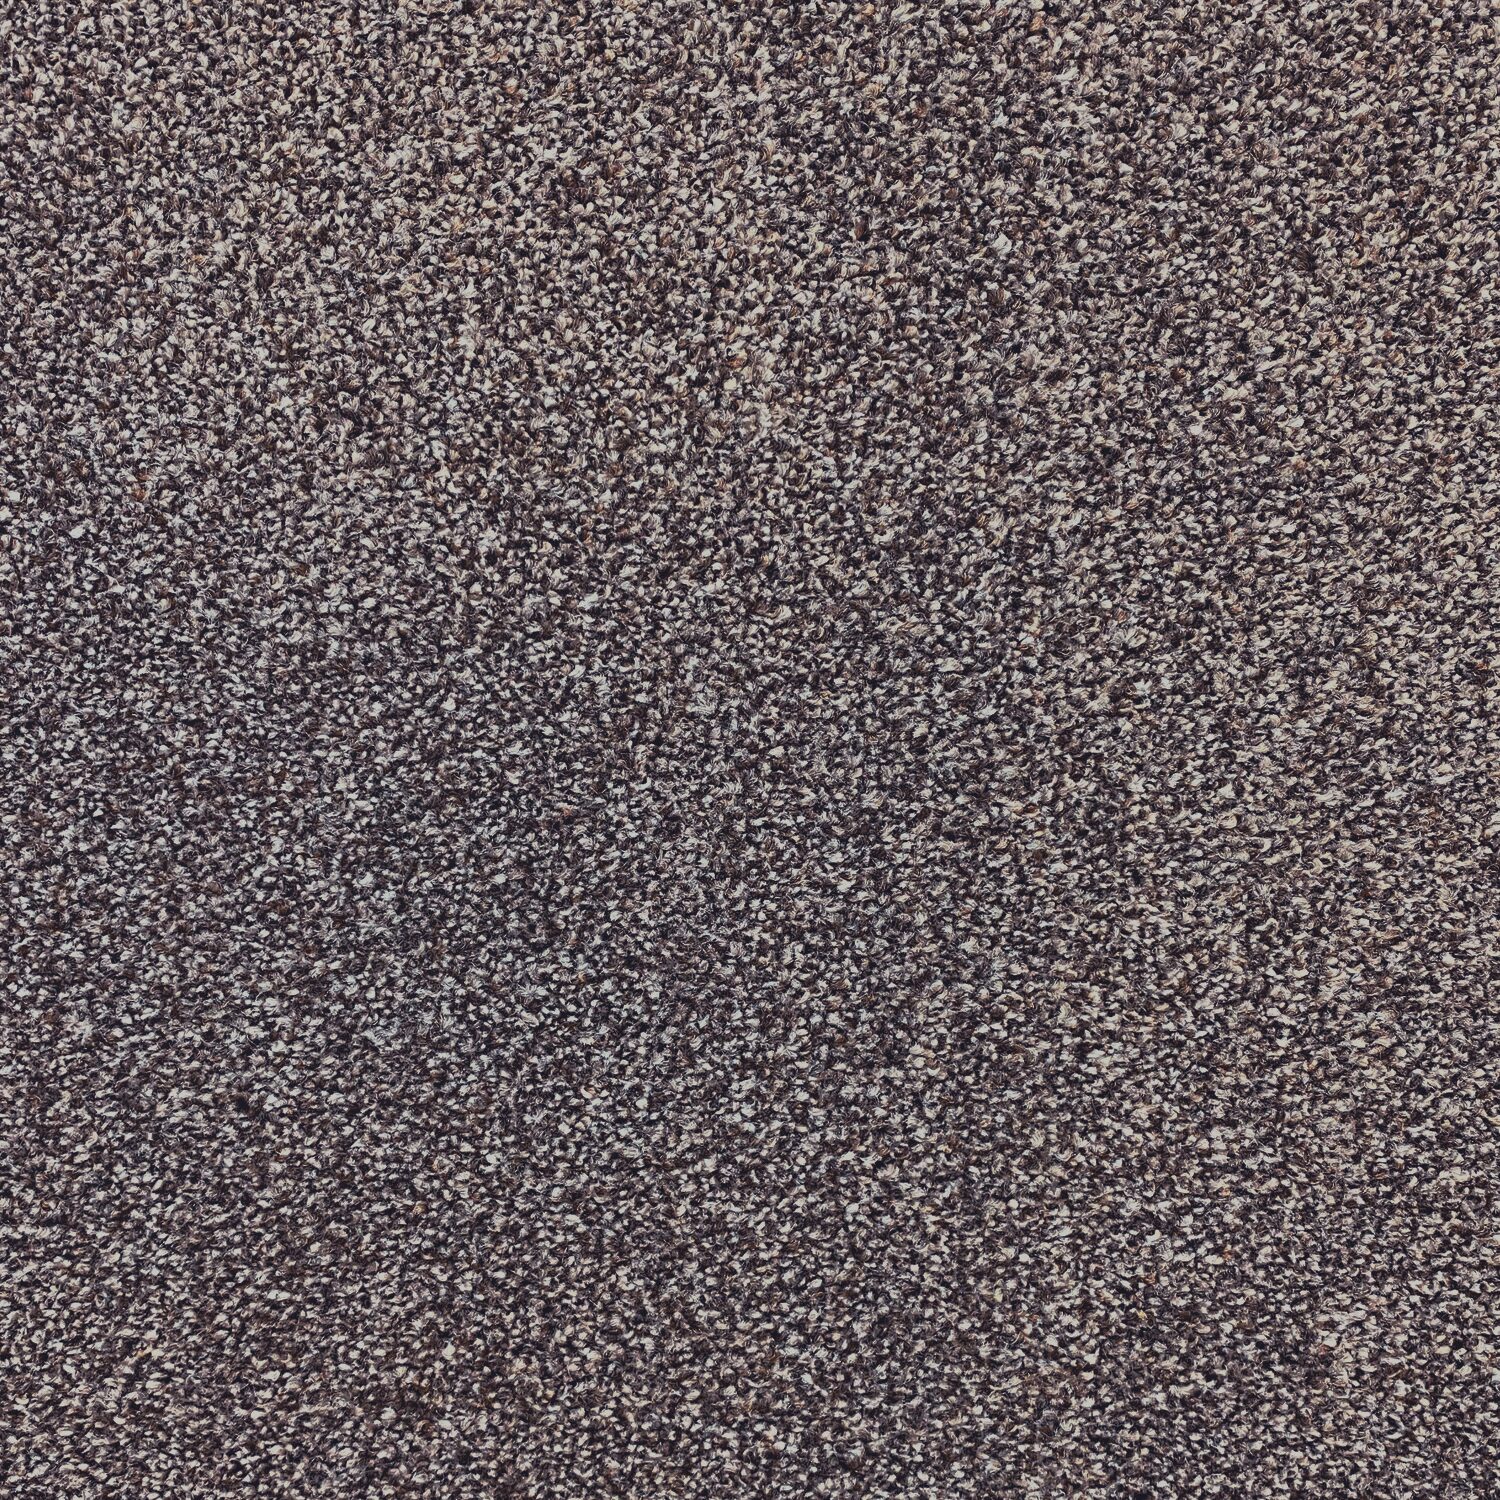 Carpet name: Smart Textures Cocoa